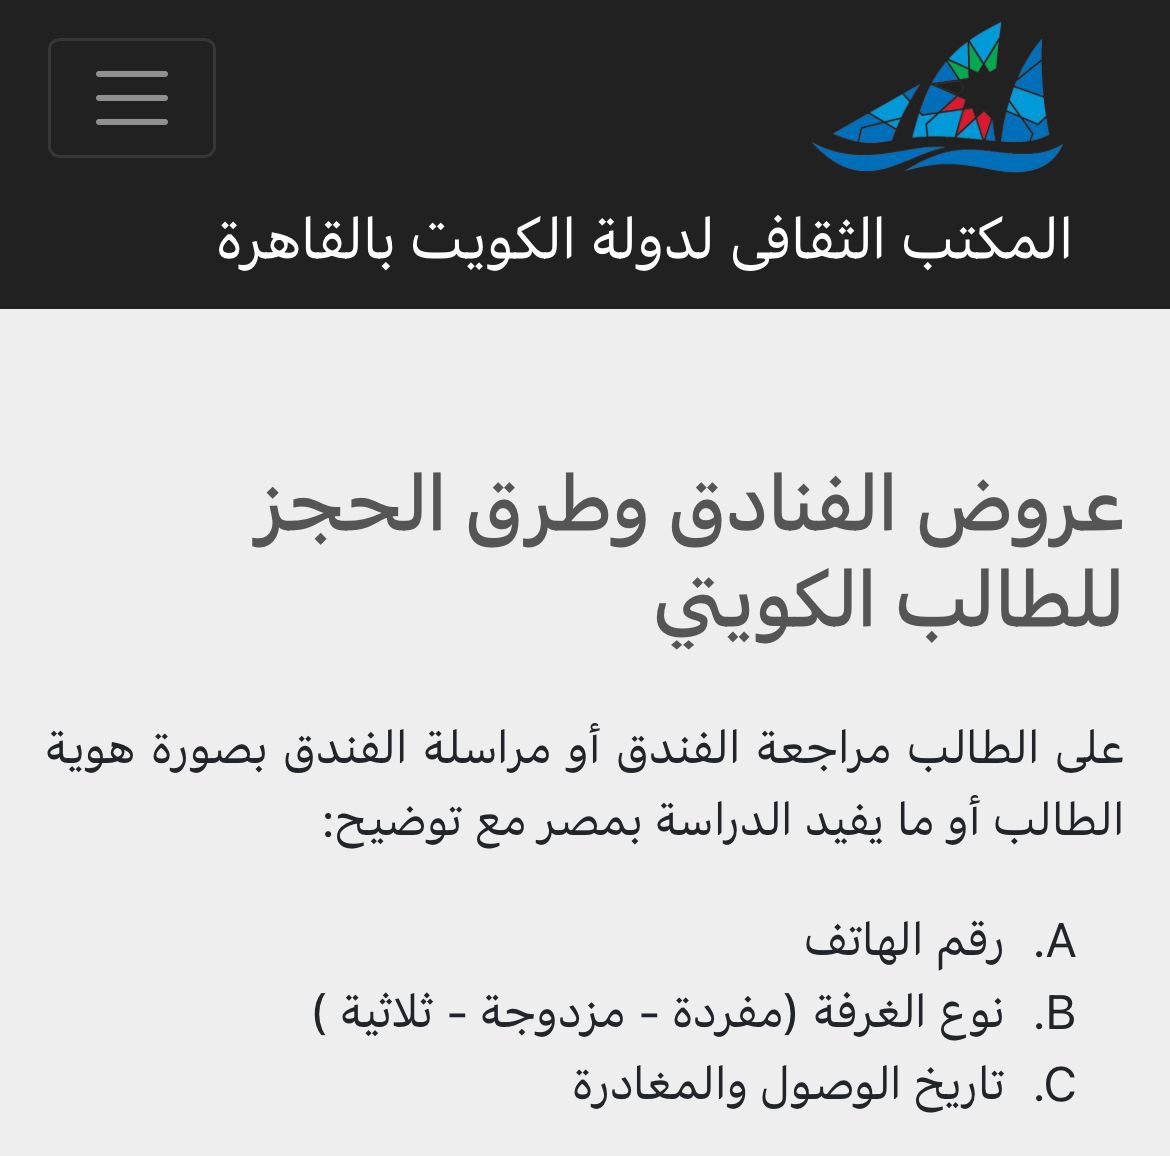 حجز الفنادق لخصم الطلبة 
عن طريق الرابط 🔽
kwcultureg.com/Hotel.php
.
#طلبة_مصر